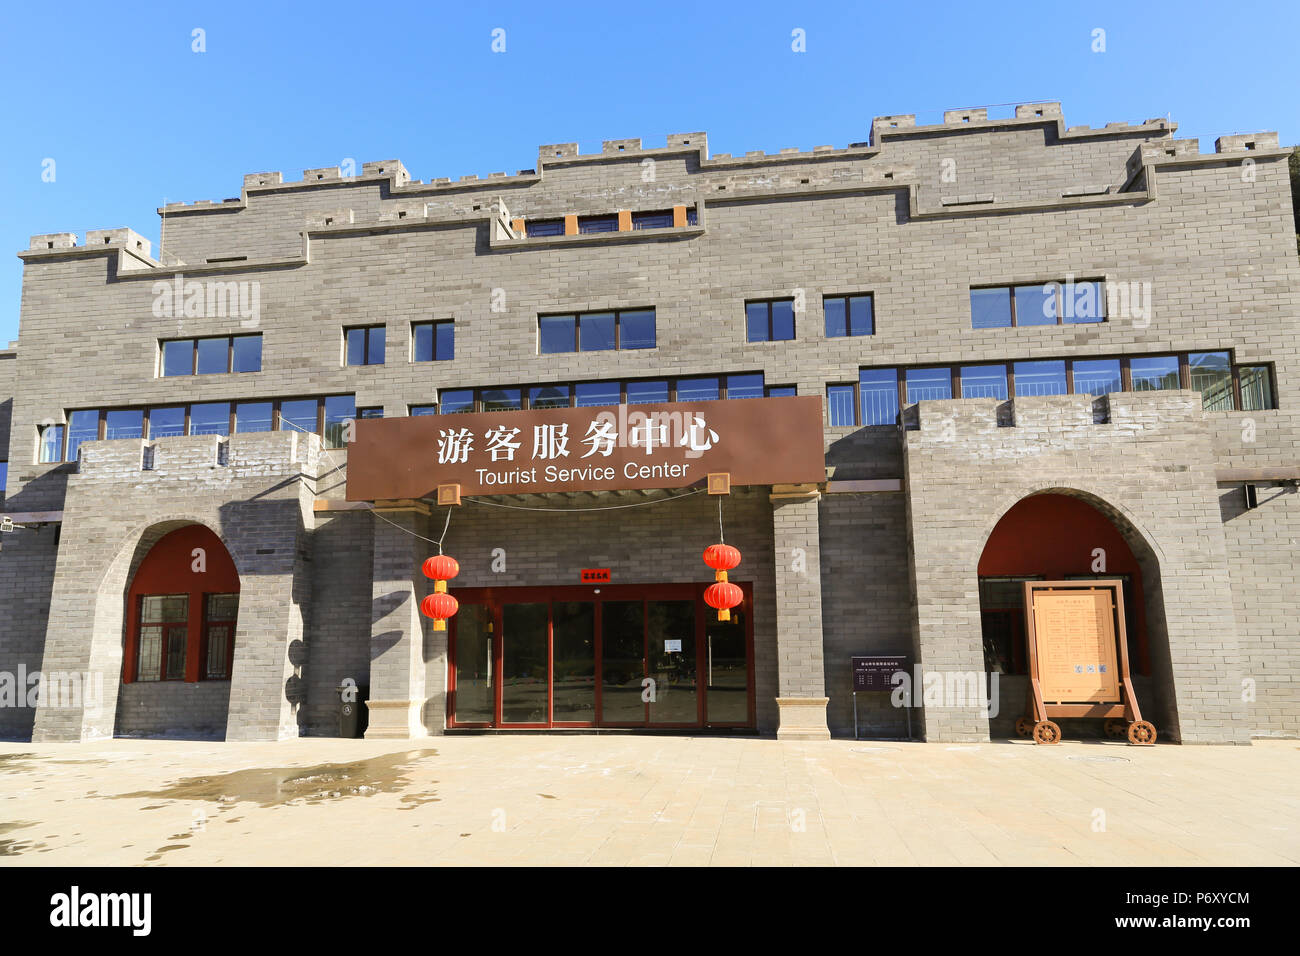 Tourist Service Center building presso la Grande Muraglia a Jinshanling, 130 km da Pechino, Cina. Foto Stock